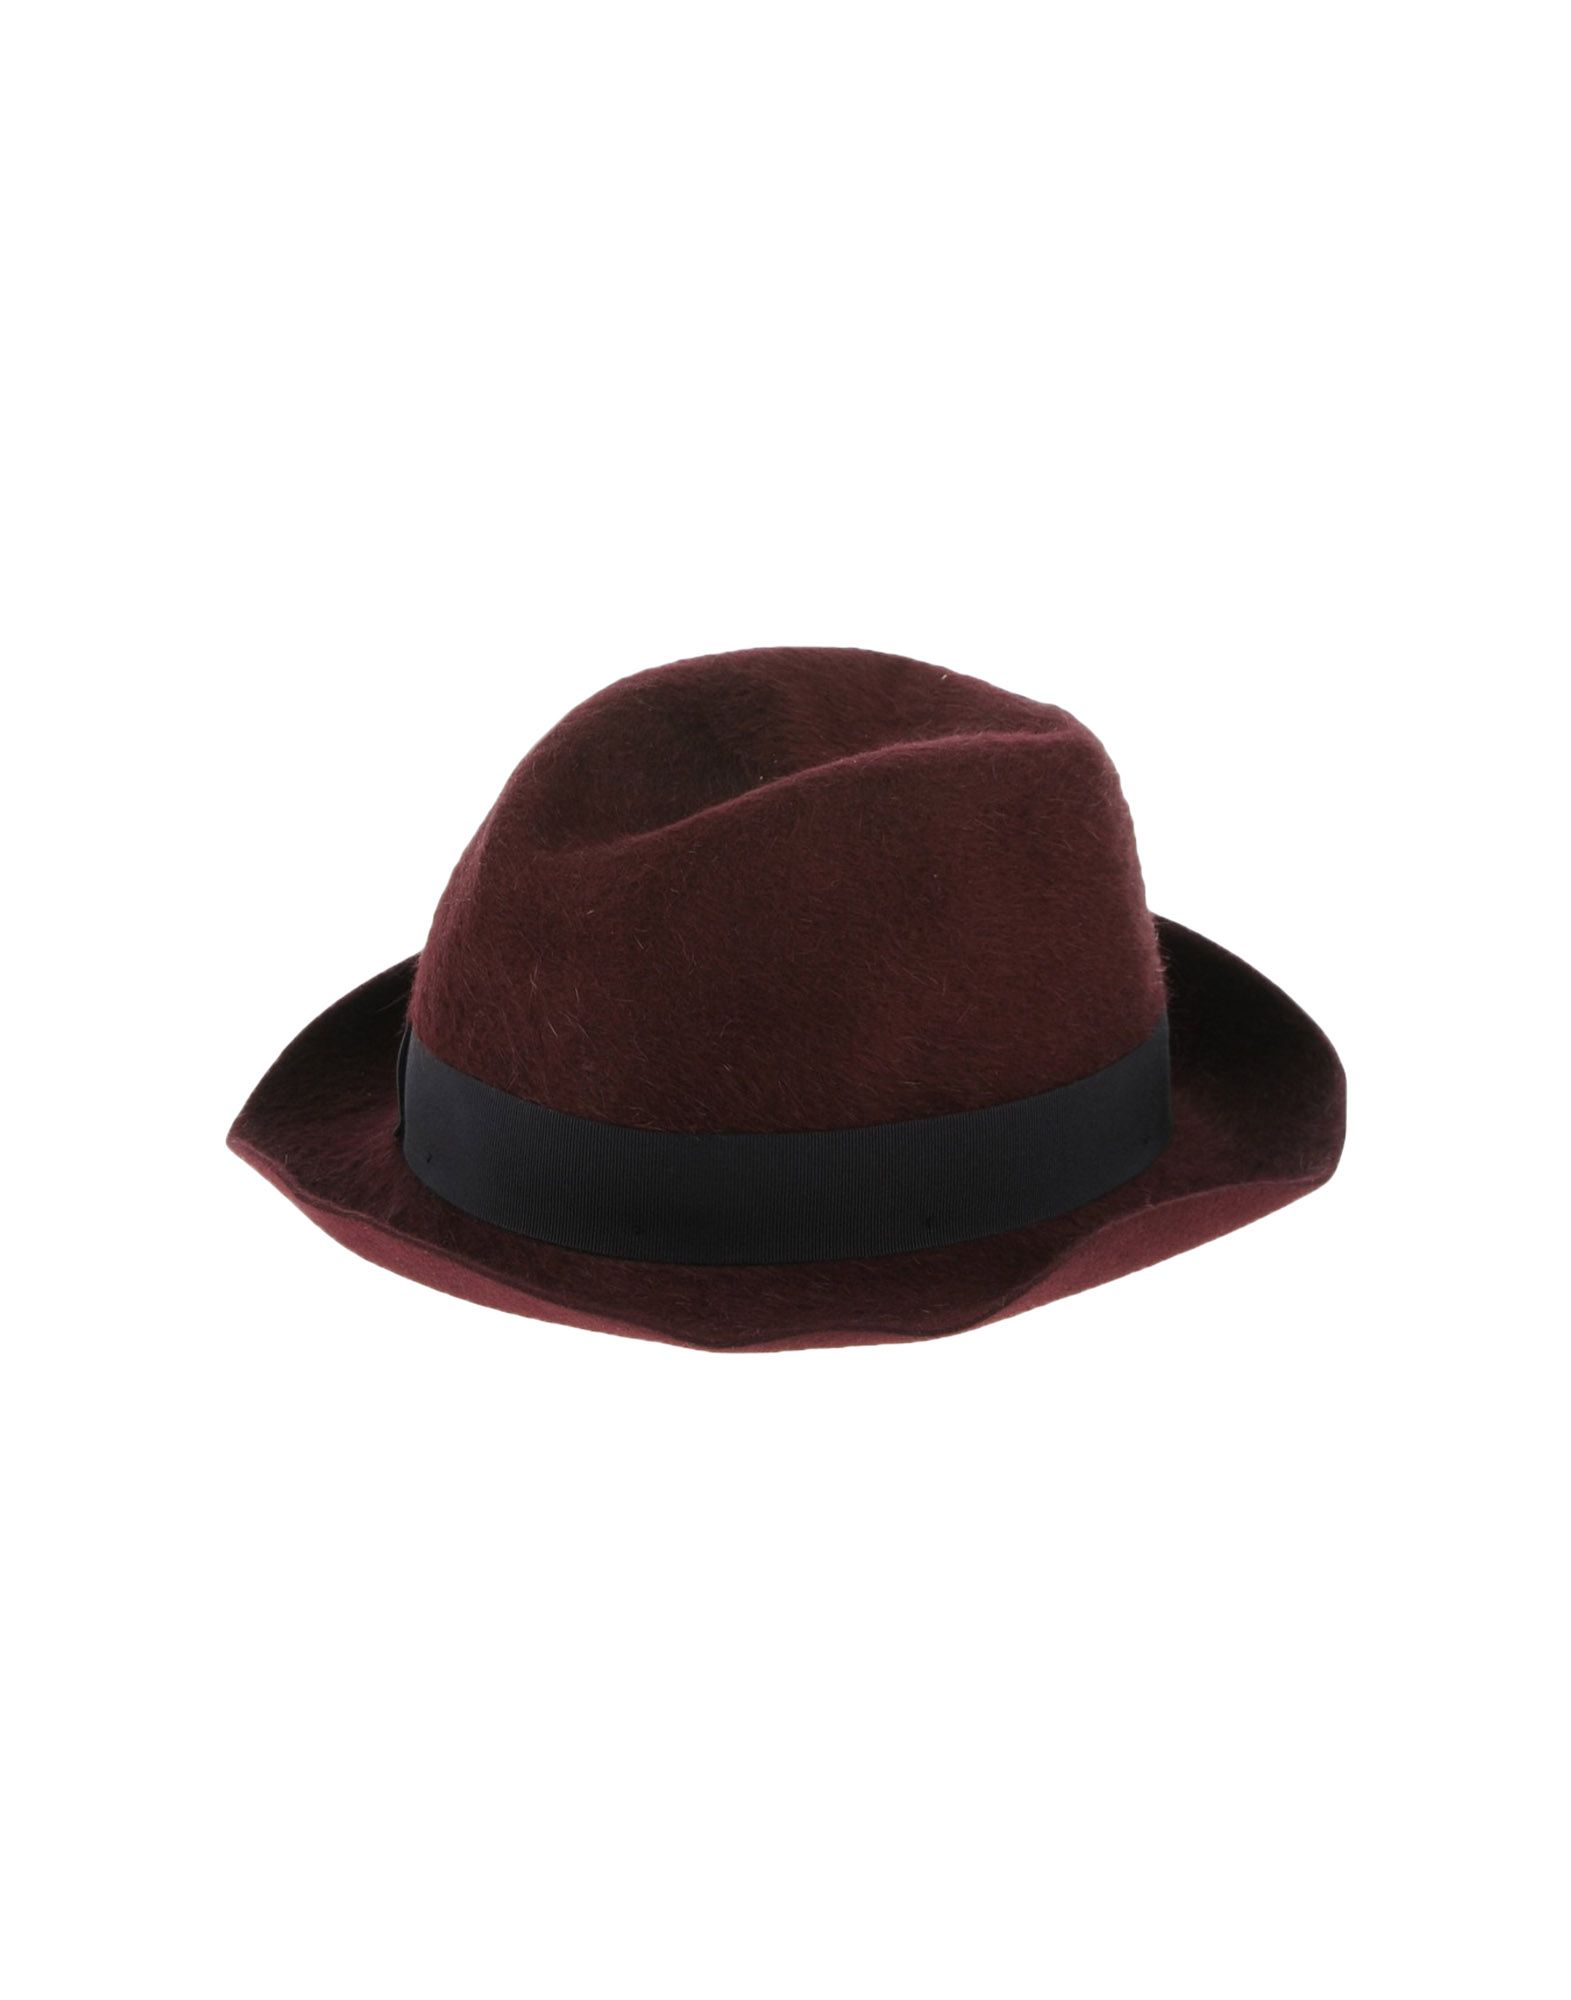 《送料無料》BORSALINO メンズ 帽子 ディープパープル S 紡績繊維